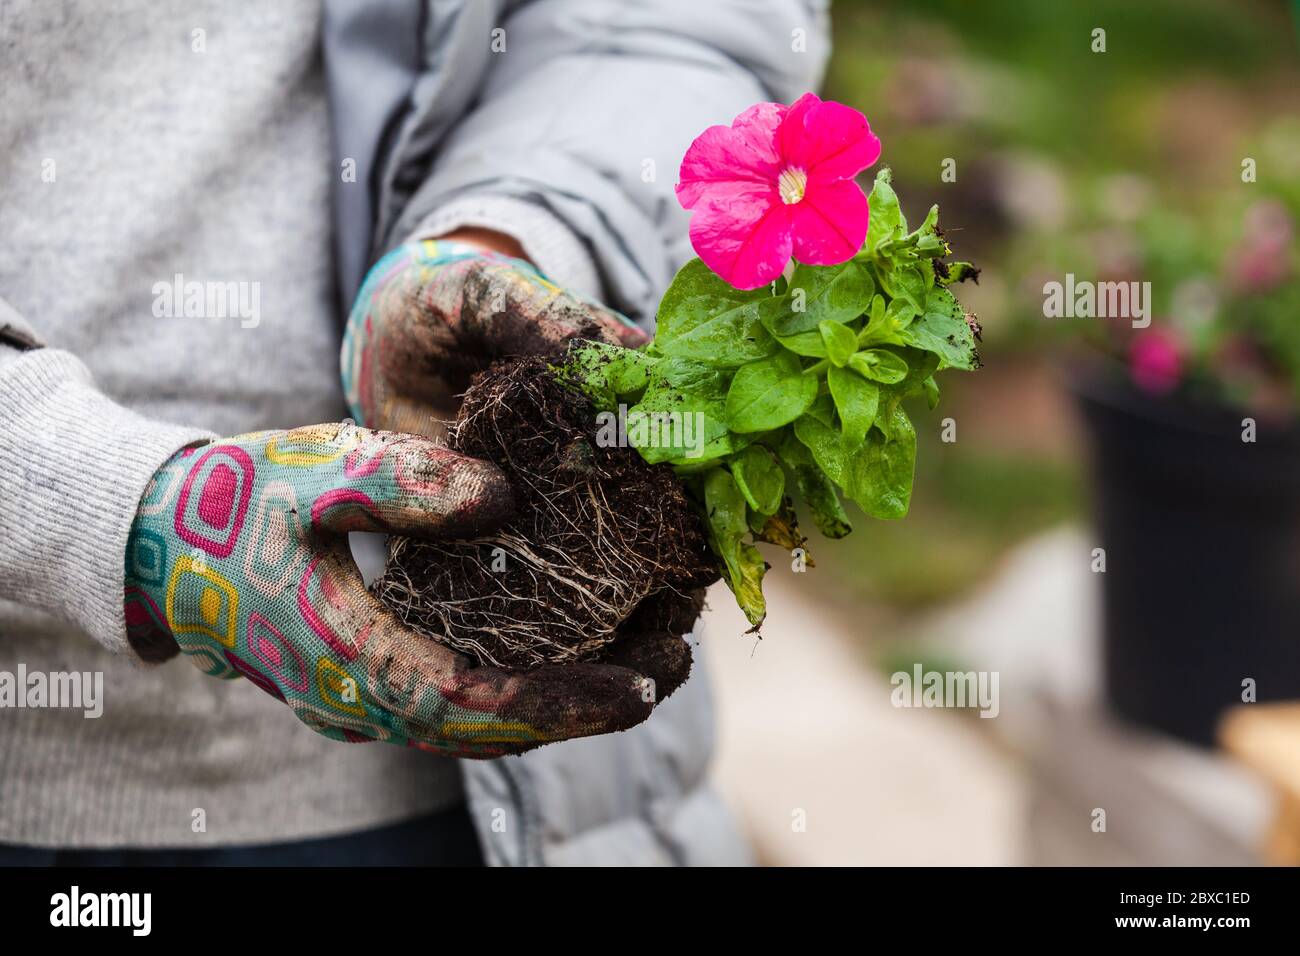 La piantina di petunia con fiore rosa è nelle mani dei giardinieri, foto ravvicinata con messa a fuoco selettiva Foto Stock